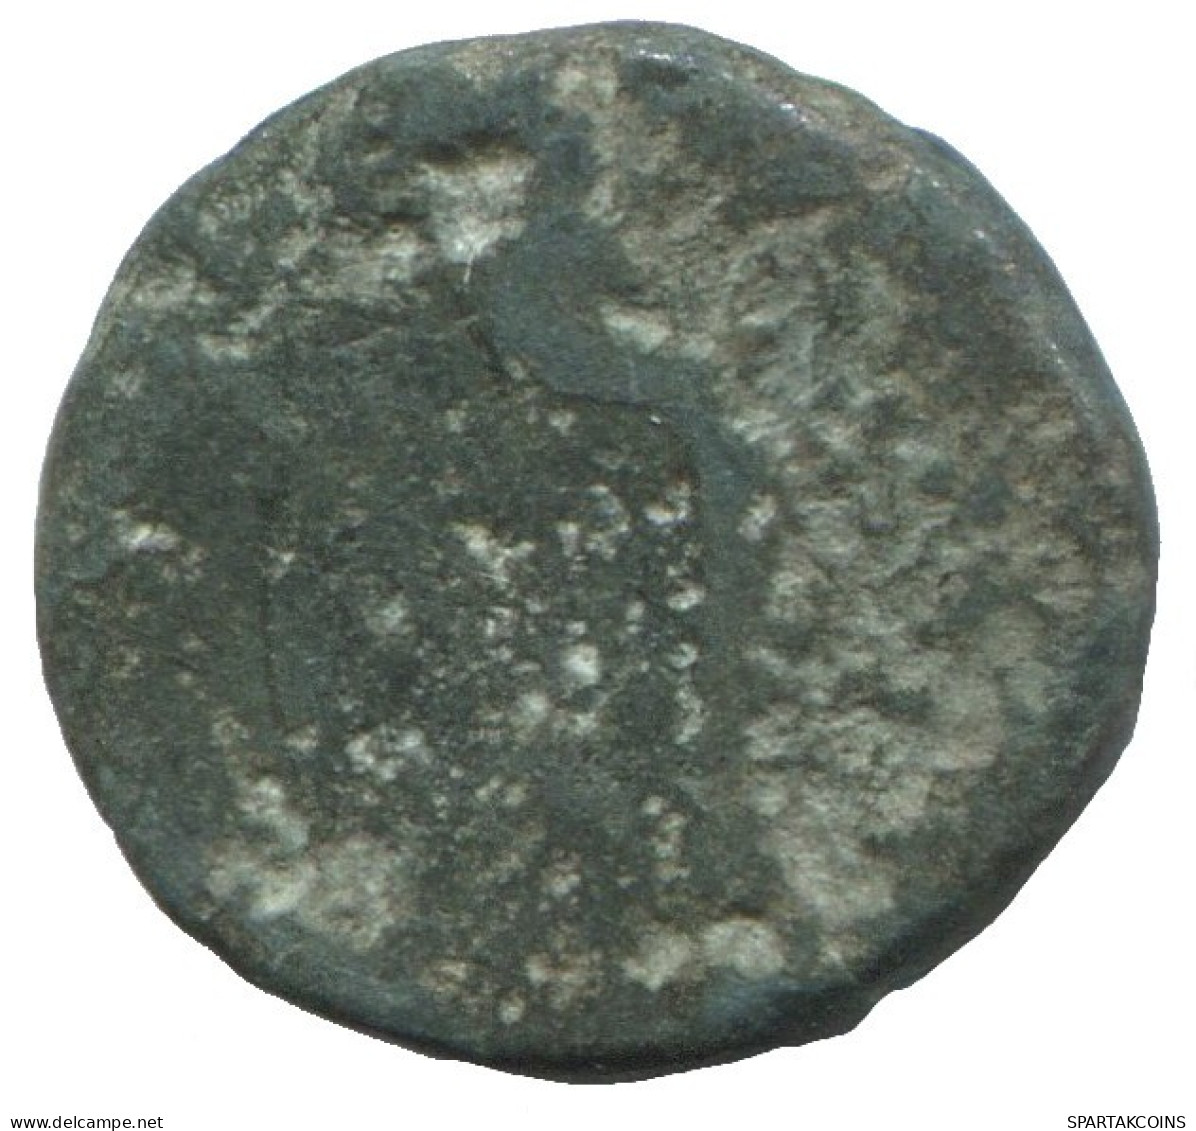 MYSIA PERGAMON ATHENA HELM Antike GRIECHISCHE Münze 1.6g/13mm #SAV1187.11.D.A - Griechische Münzen